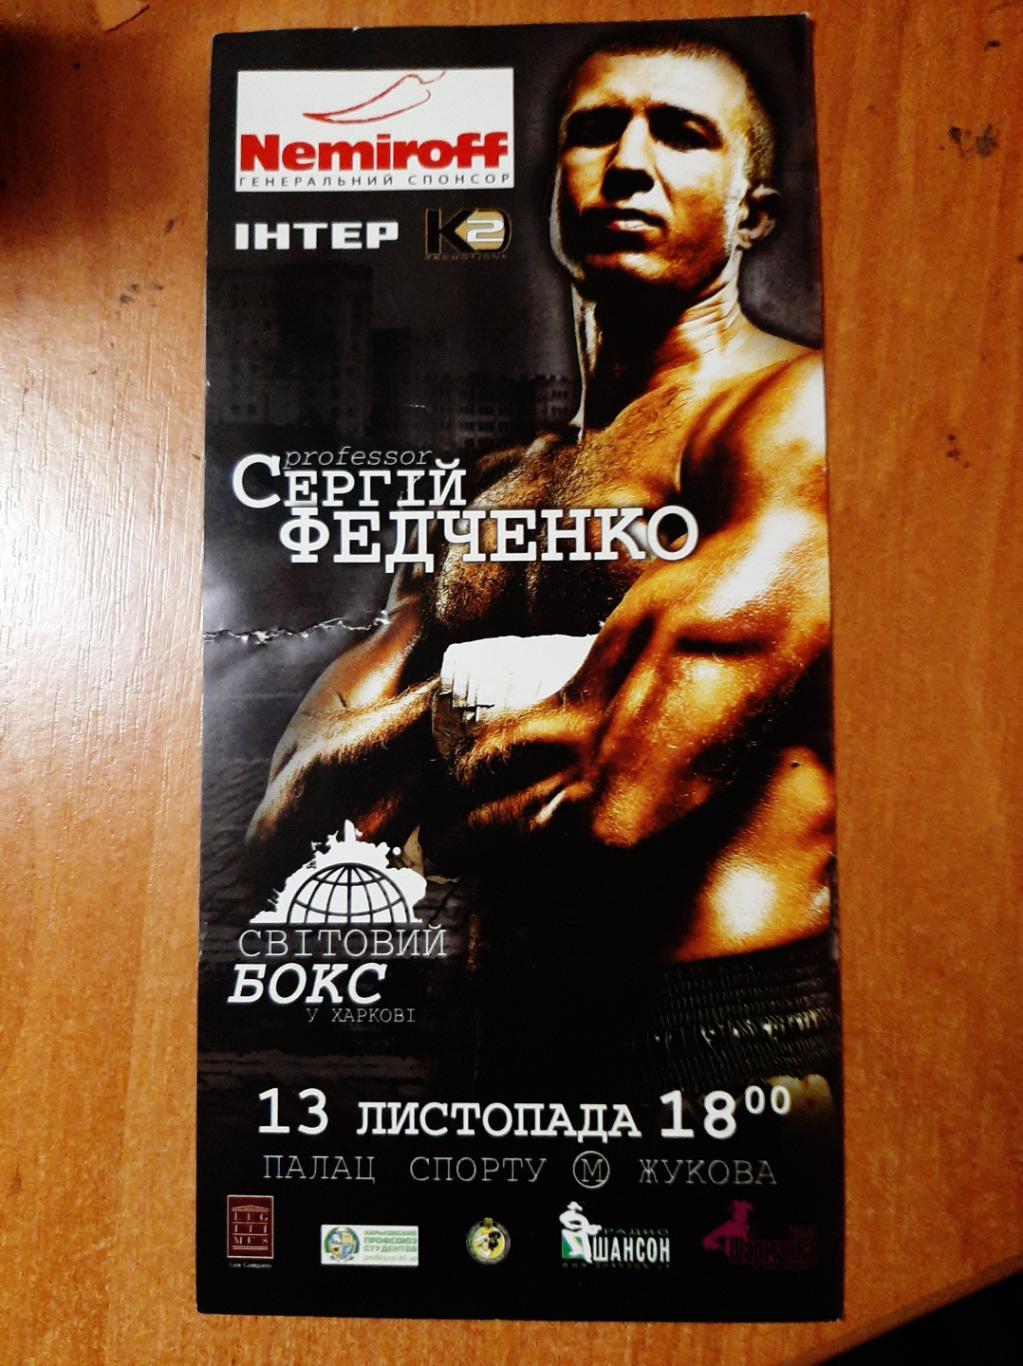 Билет Бокс Харьков 2010 г. титульный бой С. Федченко